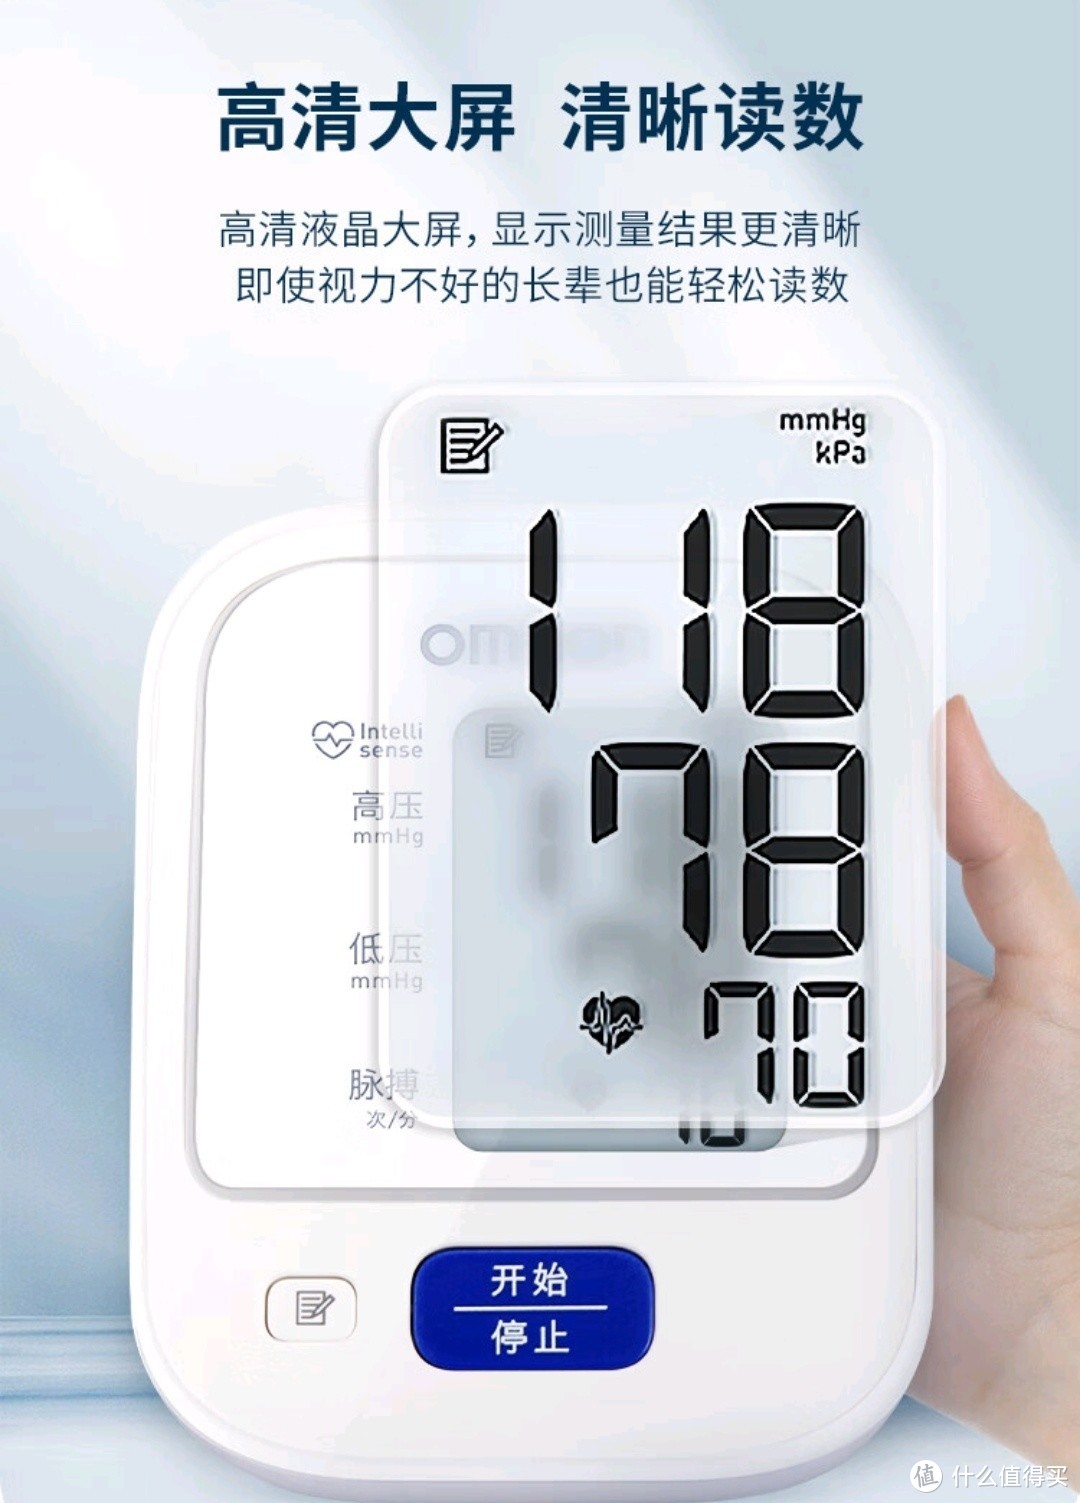 家用医疗器械欧姆龙血压计，监测血压平稳，为健康助力。